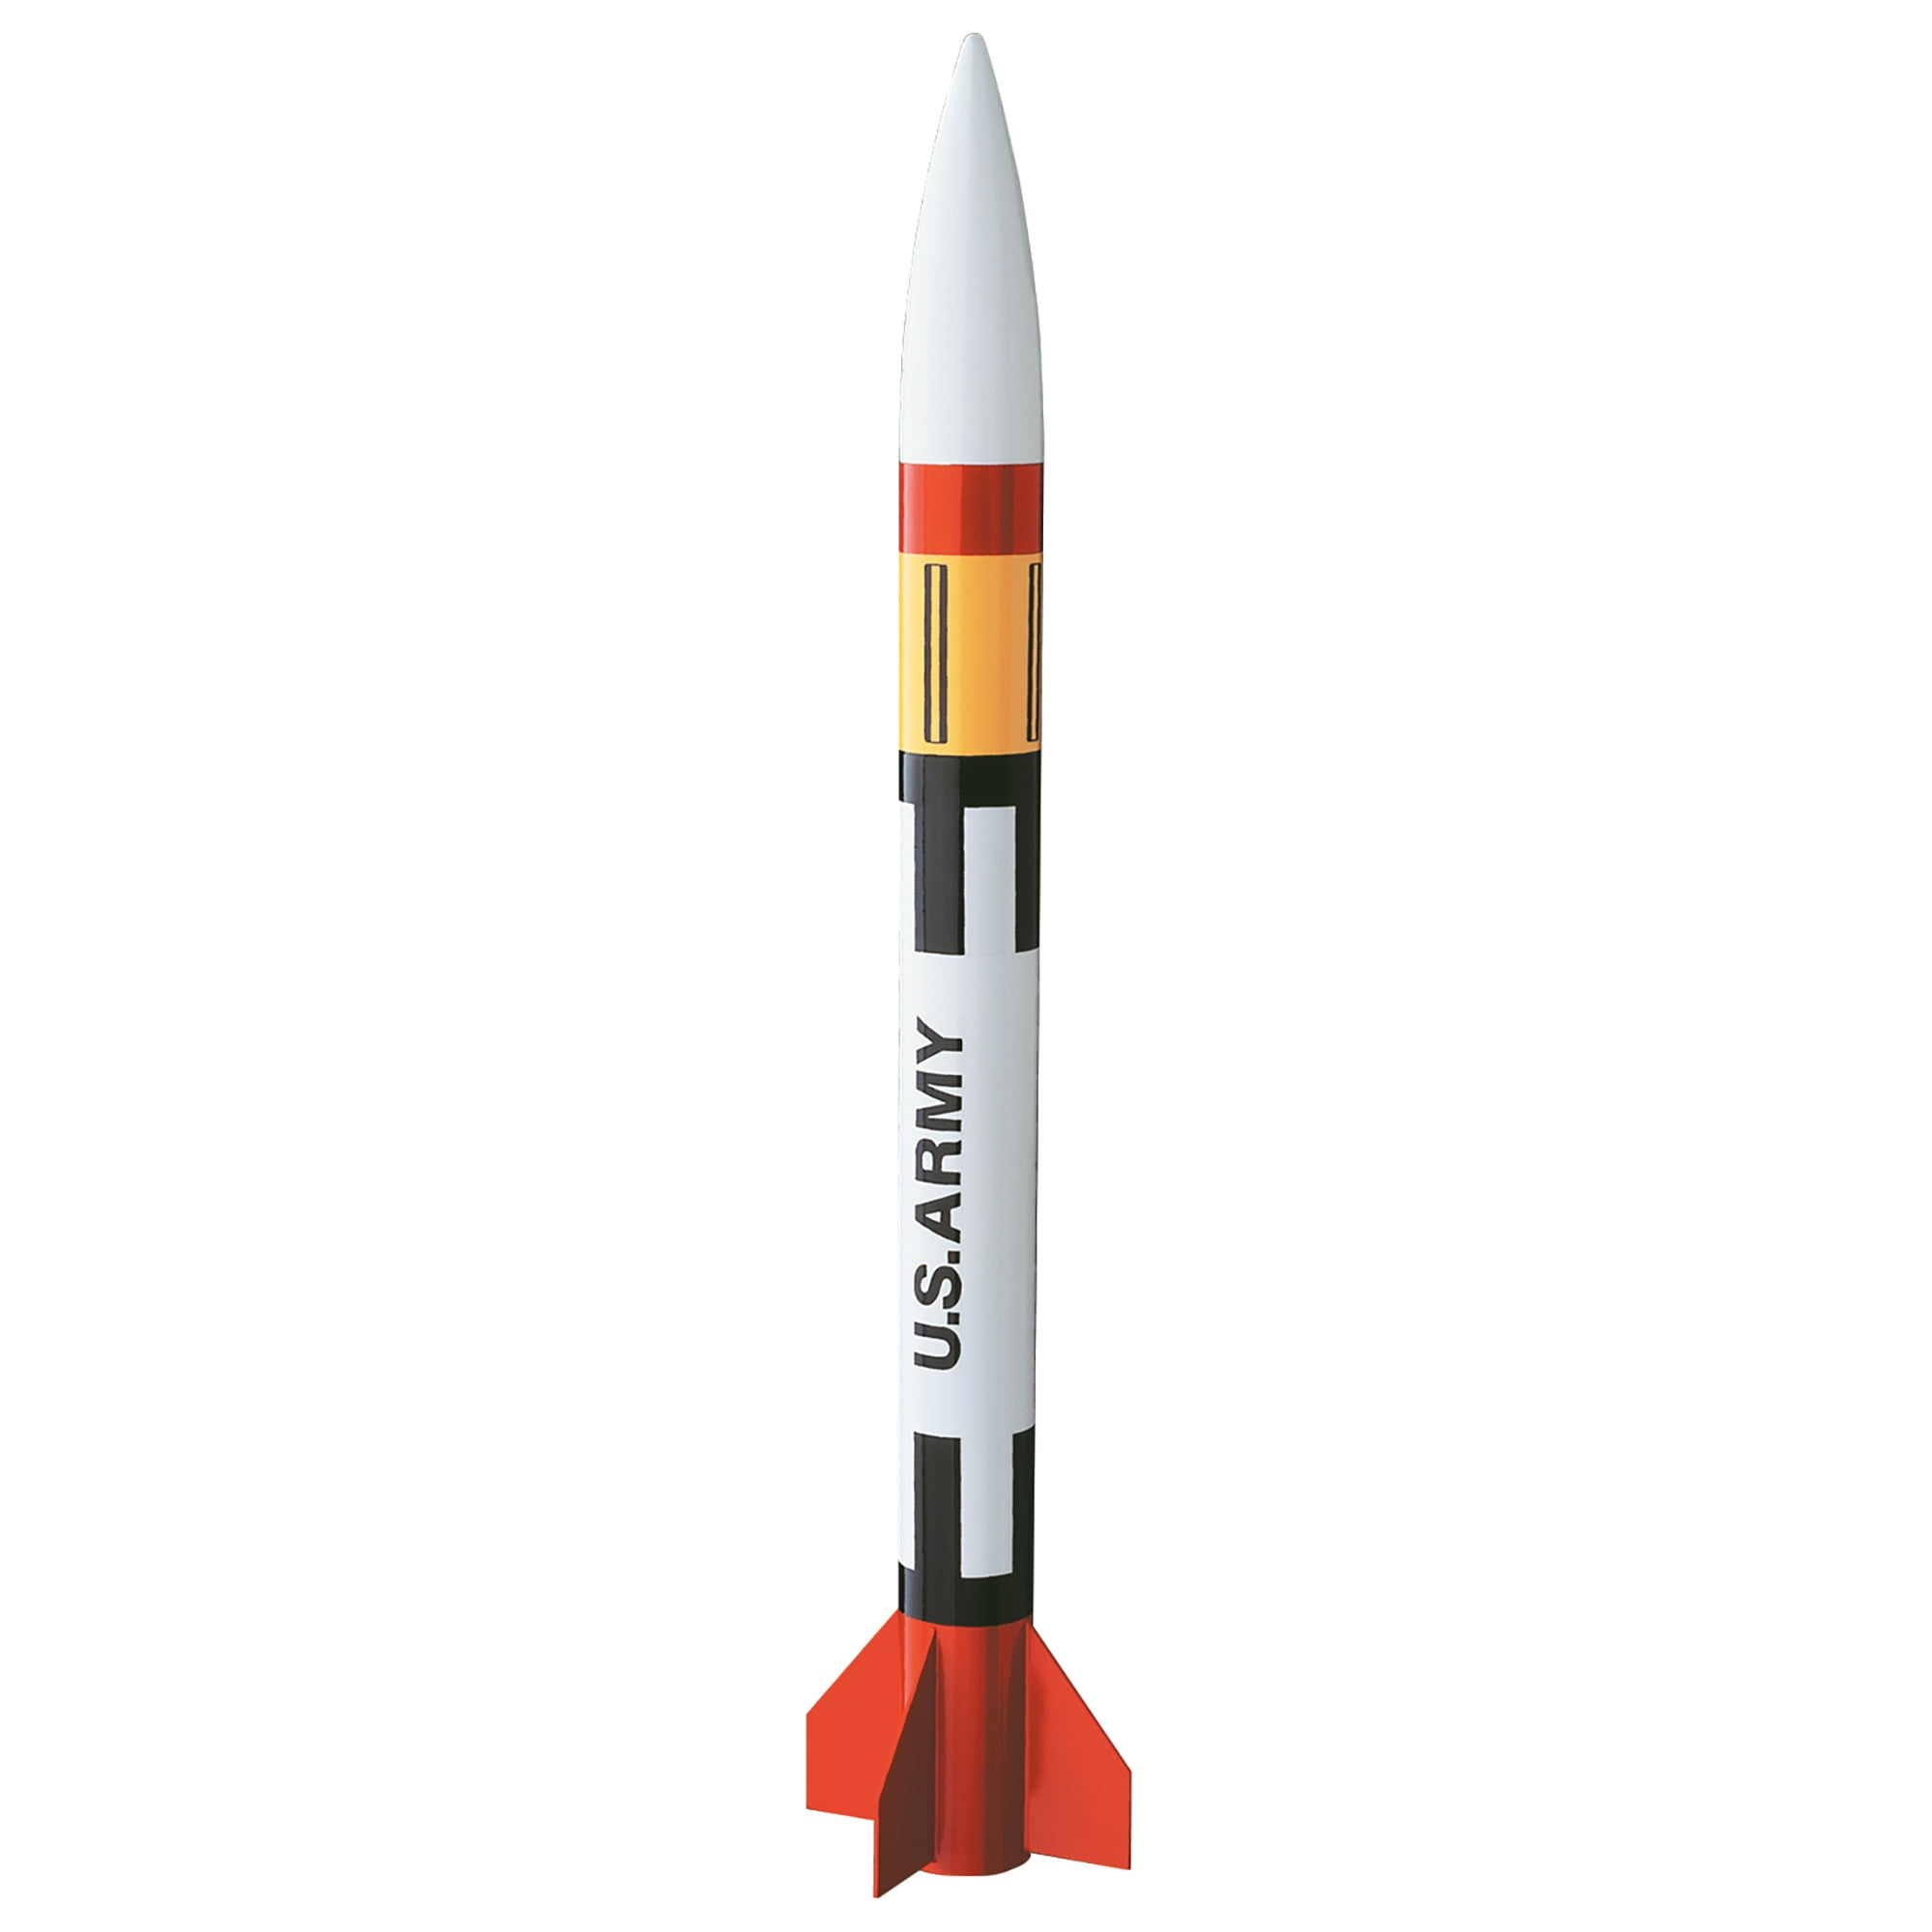 Estes Generic Model Rocket Kit Skill Level E2X EST2008 Easy to Assemble 